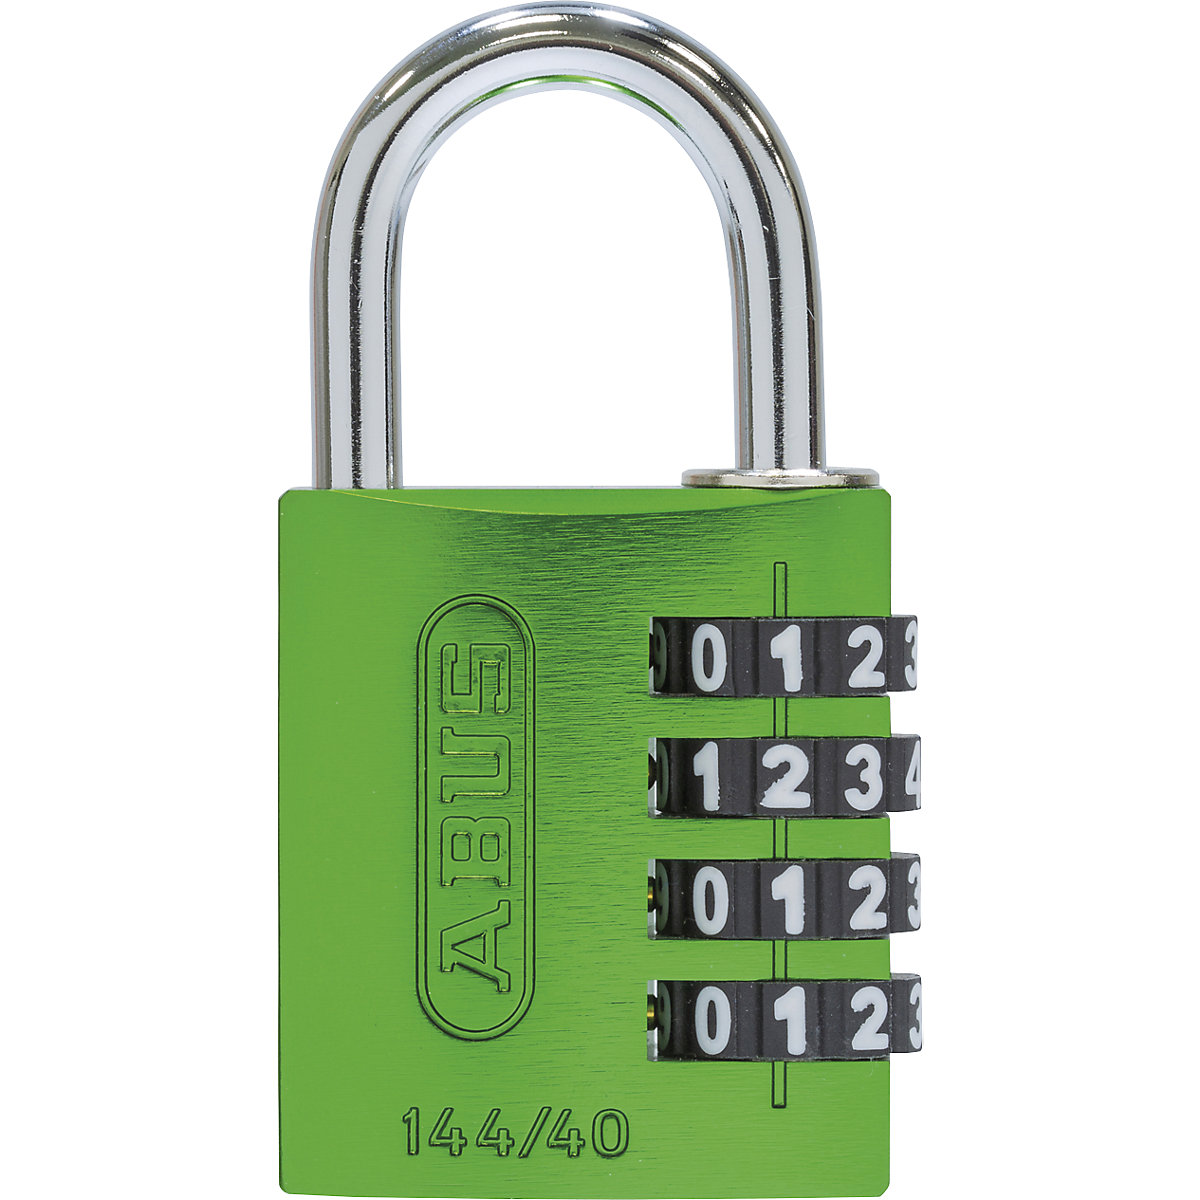 Cijferslot, aluminium – ABUS, 144/40 lock-tag, VE = 6 stuks, groen-5